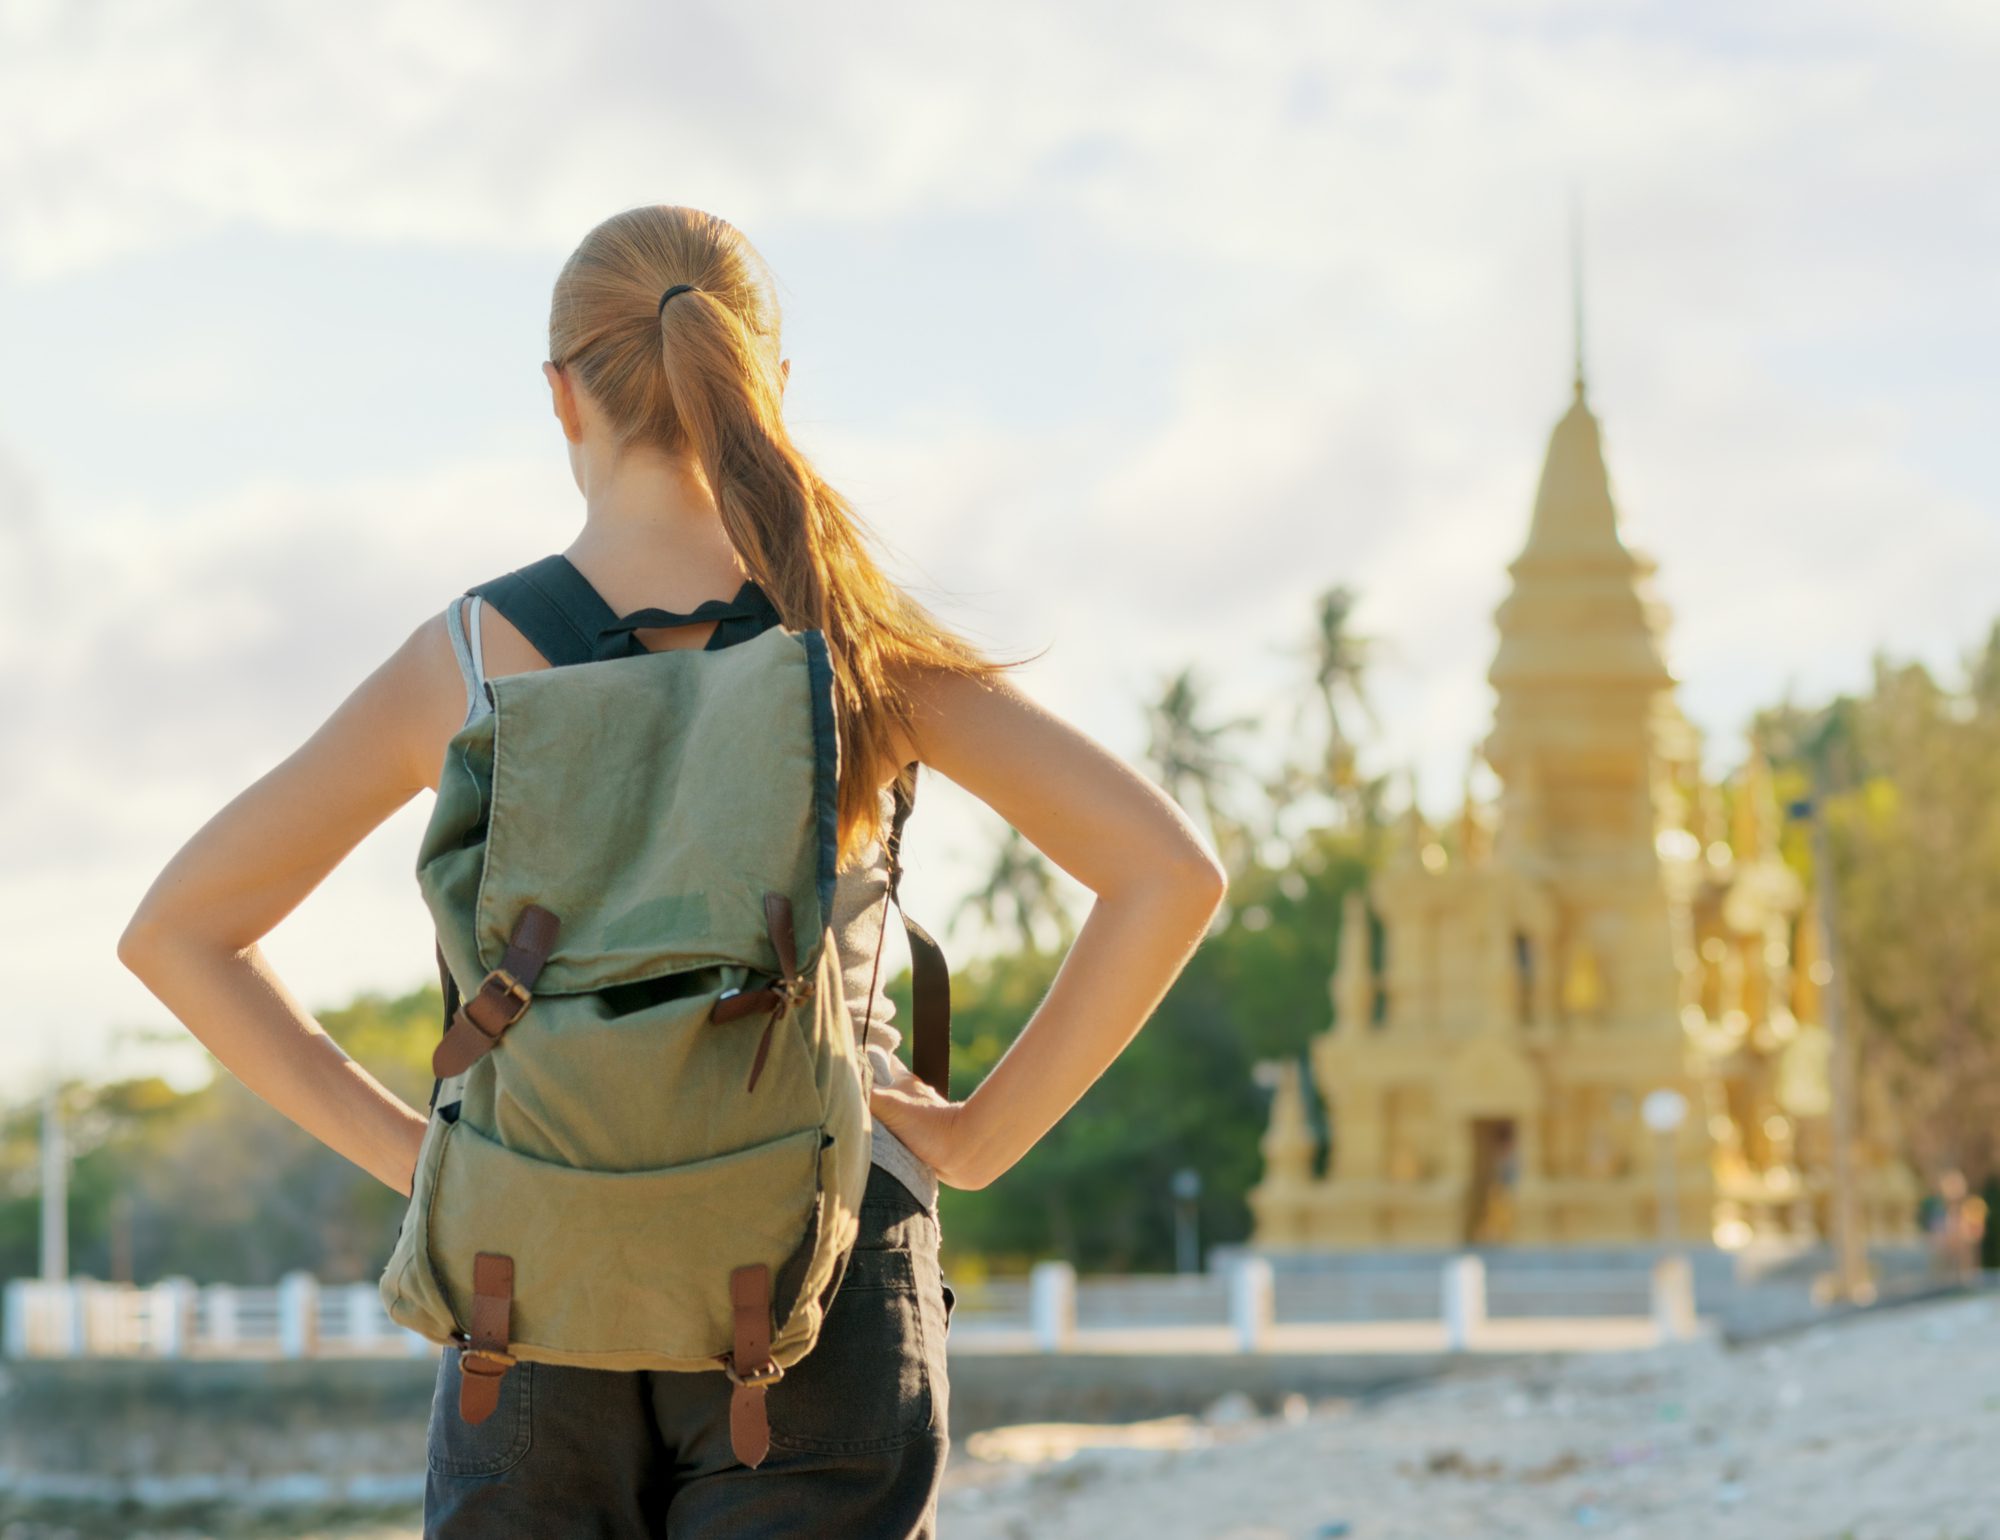 Young woman looking at golden pagoda. Hiking at Asia.